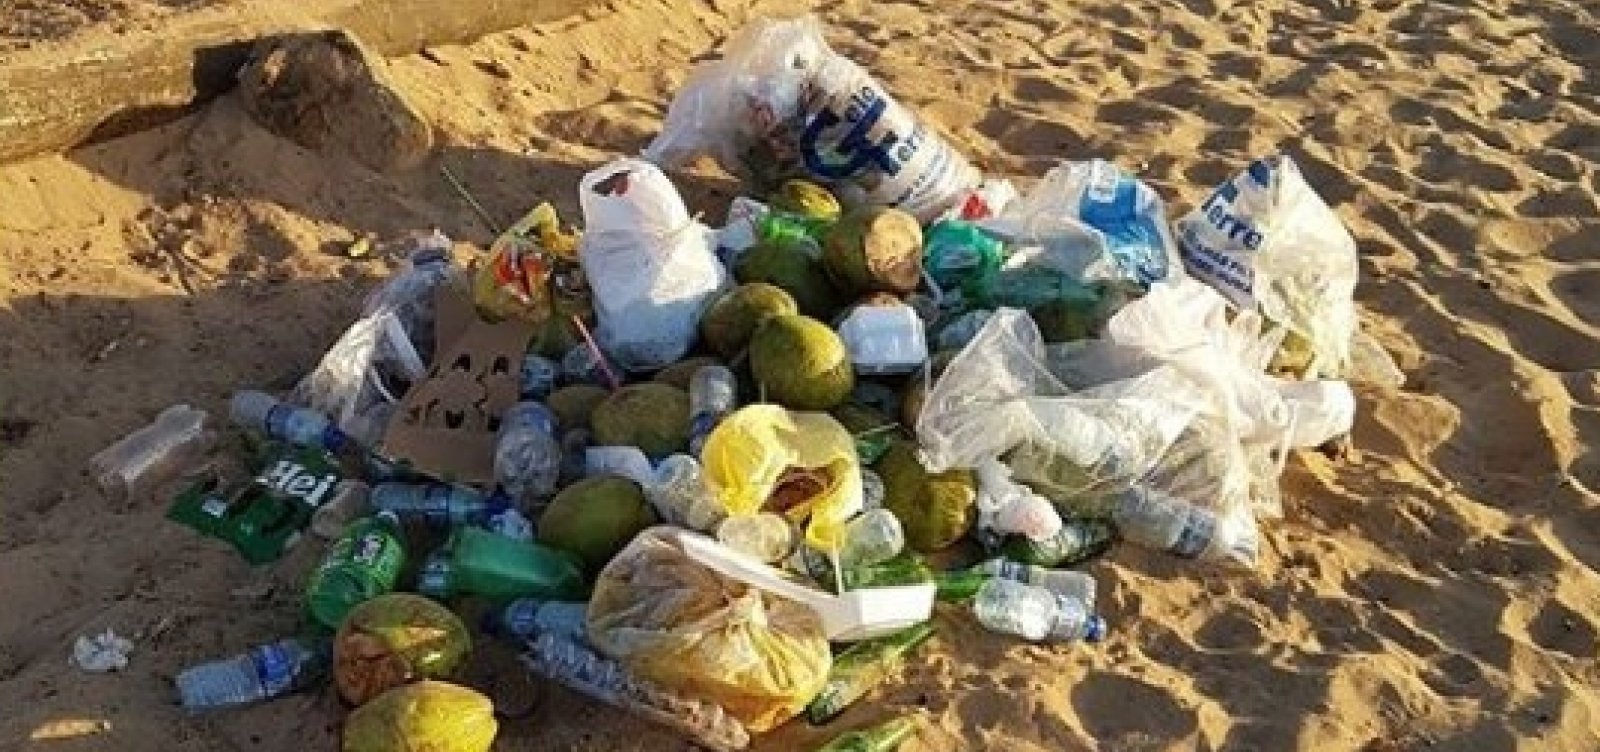 Banhistas reclamam de lixos acumulados nas praias de Salvador